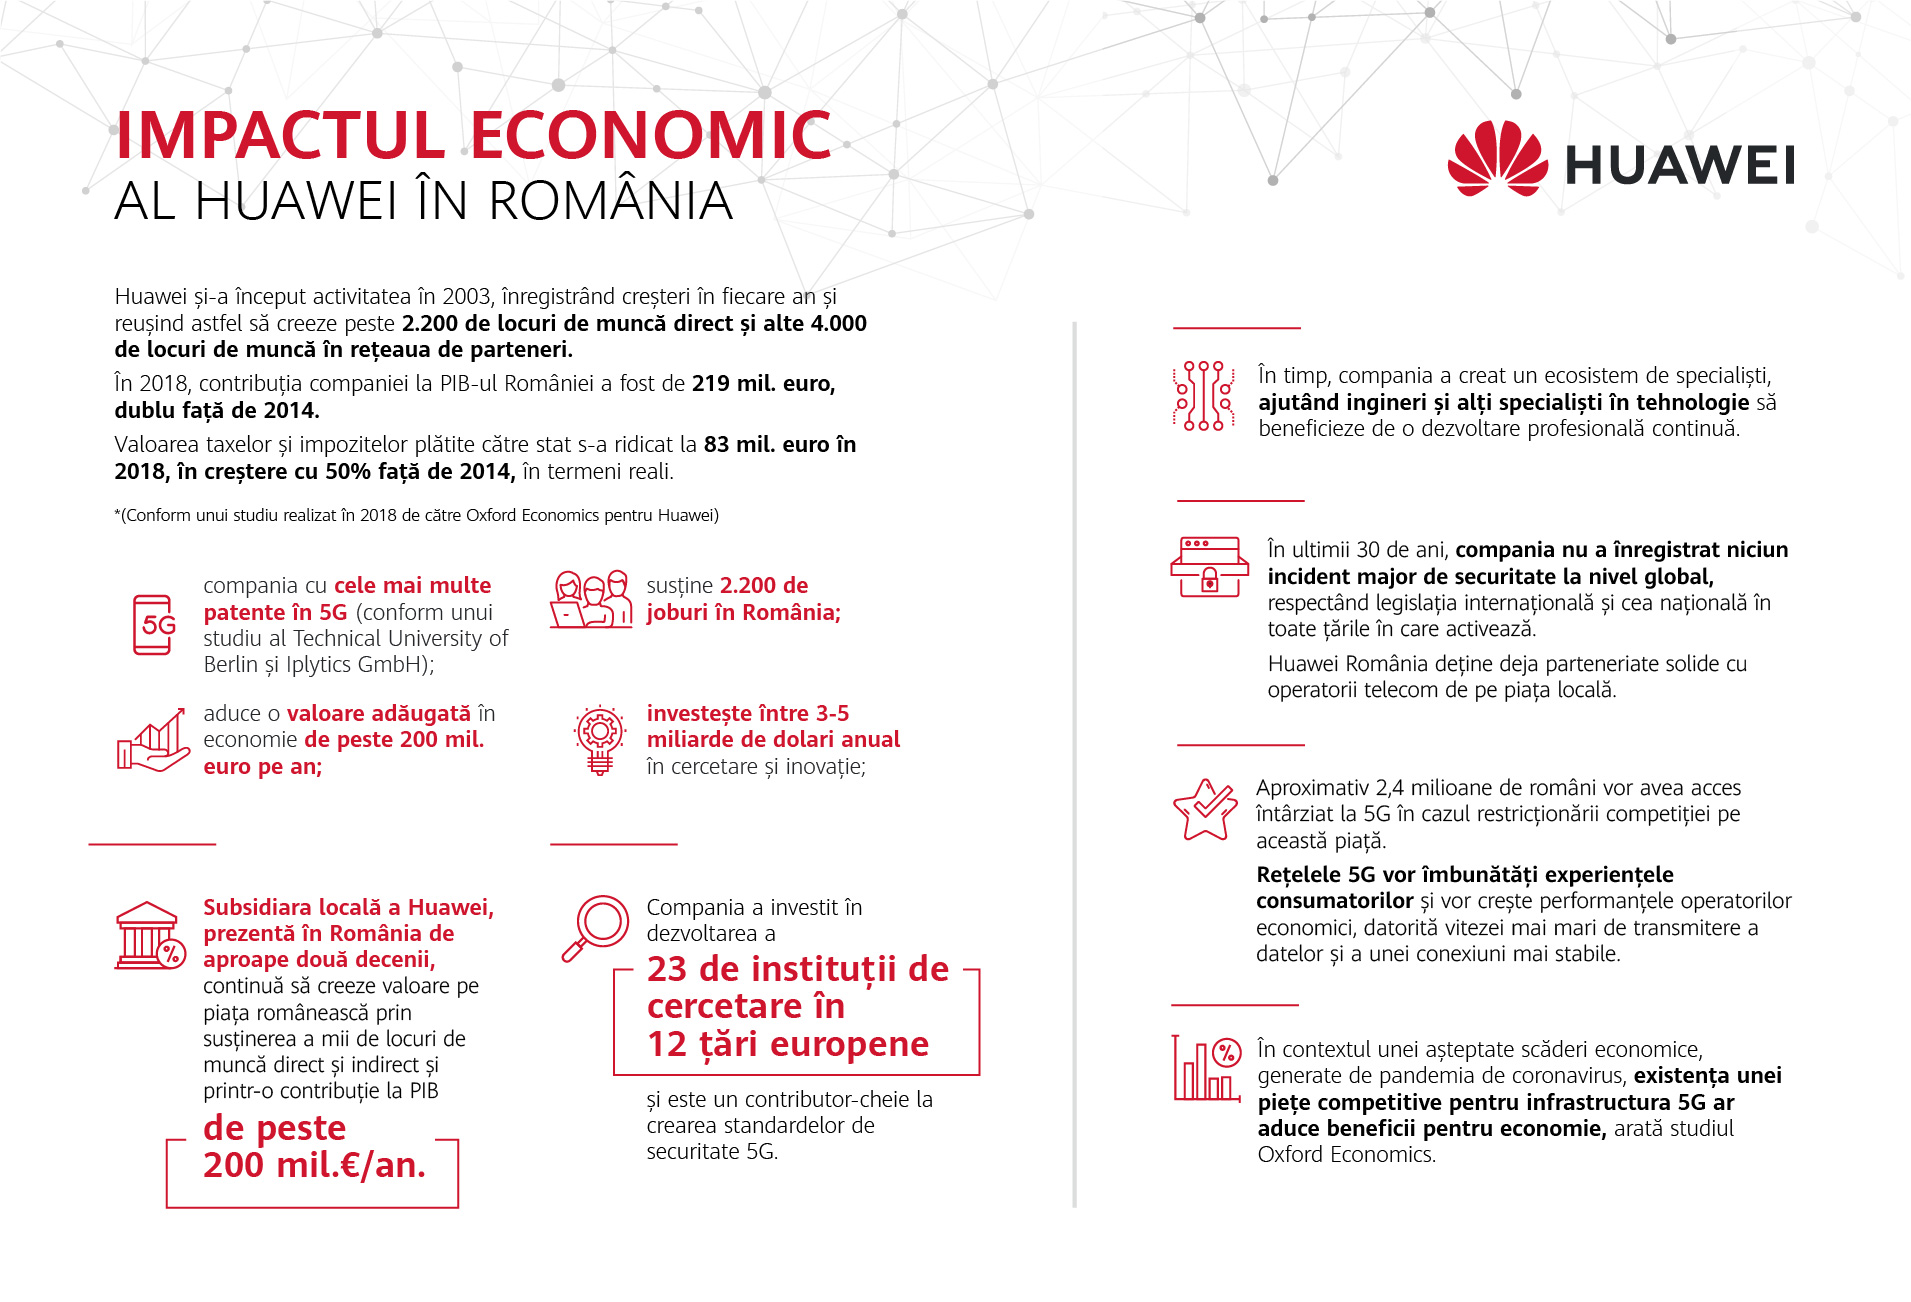 Compania care sustine economia romaneasca cu peste 200 de milioane de euro. Contribuie la piața muncii cu peste 2.200 de joburi